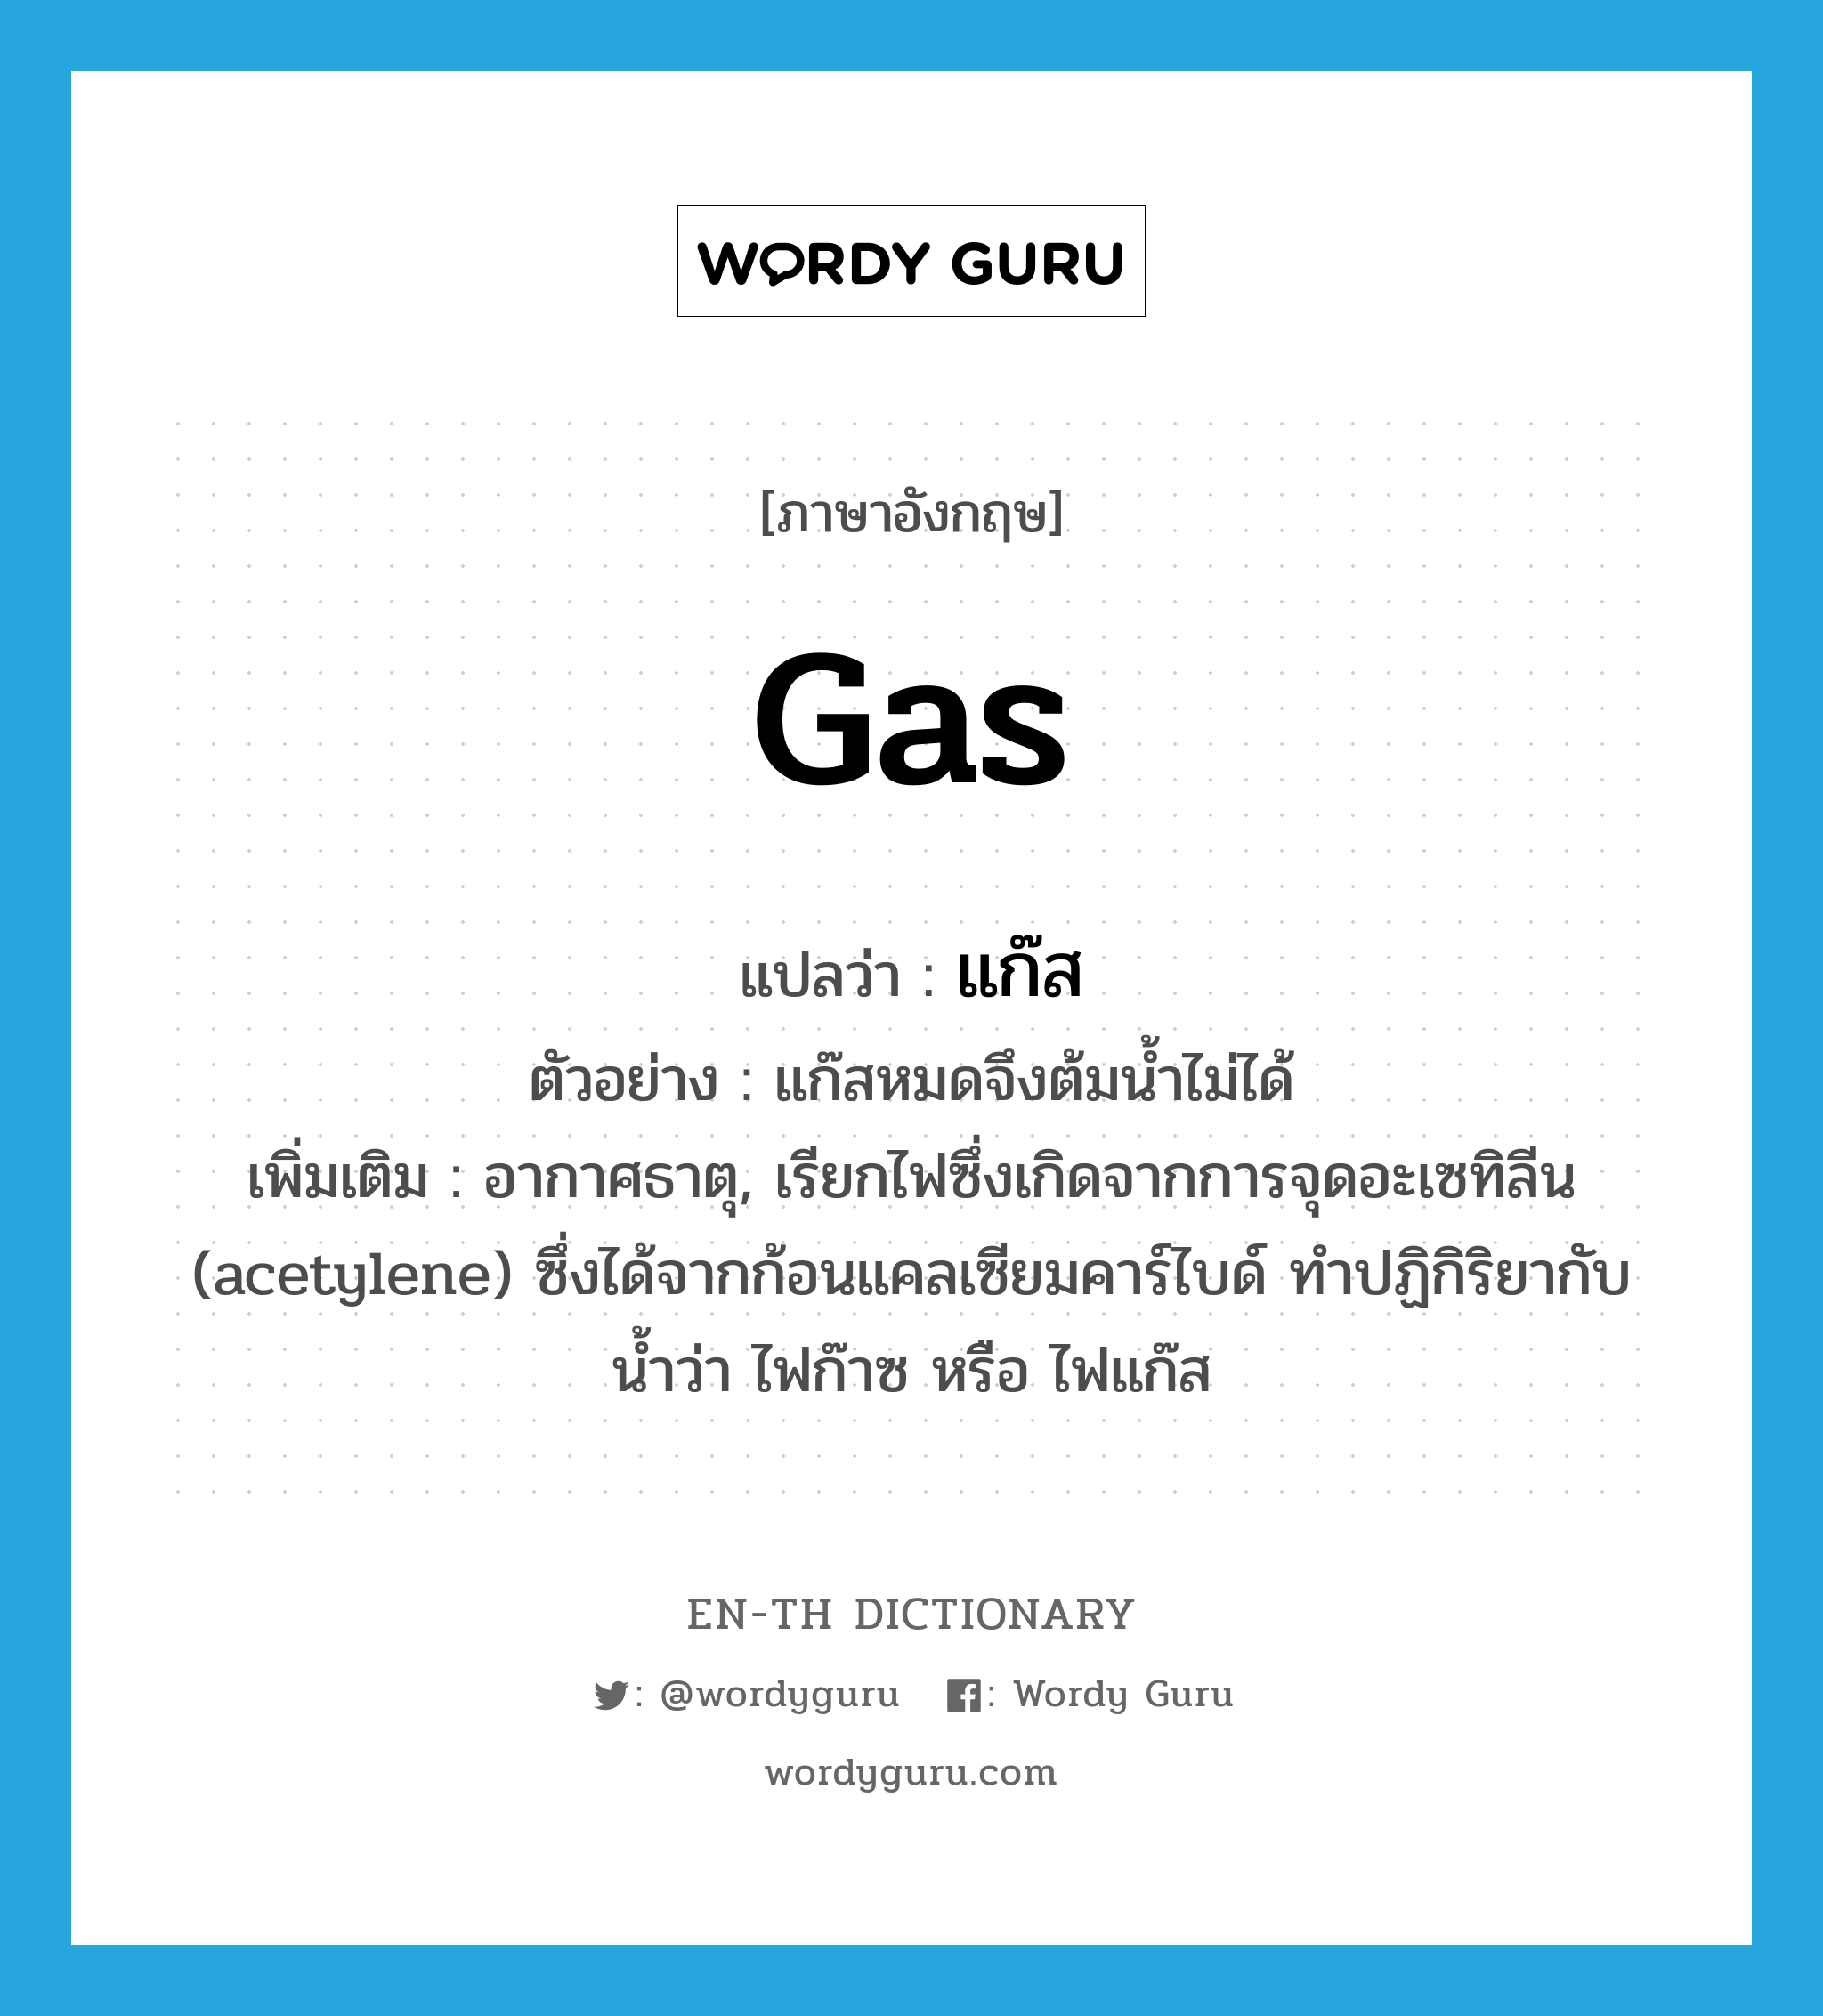 แก๊ส ภาษาอังกฤษ?, คำศัพท์ภาษาอังกฤษ แก๊ส แปลว่า gas ประเภท N ตัวอย่าง แก๊สหมดจึงต้มน้ำไม่ได้ เพิ่มเติม อากาศธาตุ, เรียกไฟซึ่งเกิดจากการจุดอะเซทิลีน (acetylene) ซึ่งได้จากก้อนแคลเซียมคาร์ไบด์ ทำปฏิกิริยากับน้ำว่า ไฟก๊าซ หรือ ไฟแก๊ส หมวด N